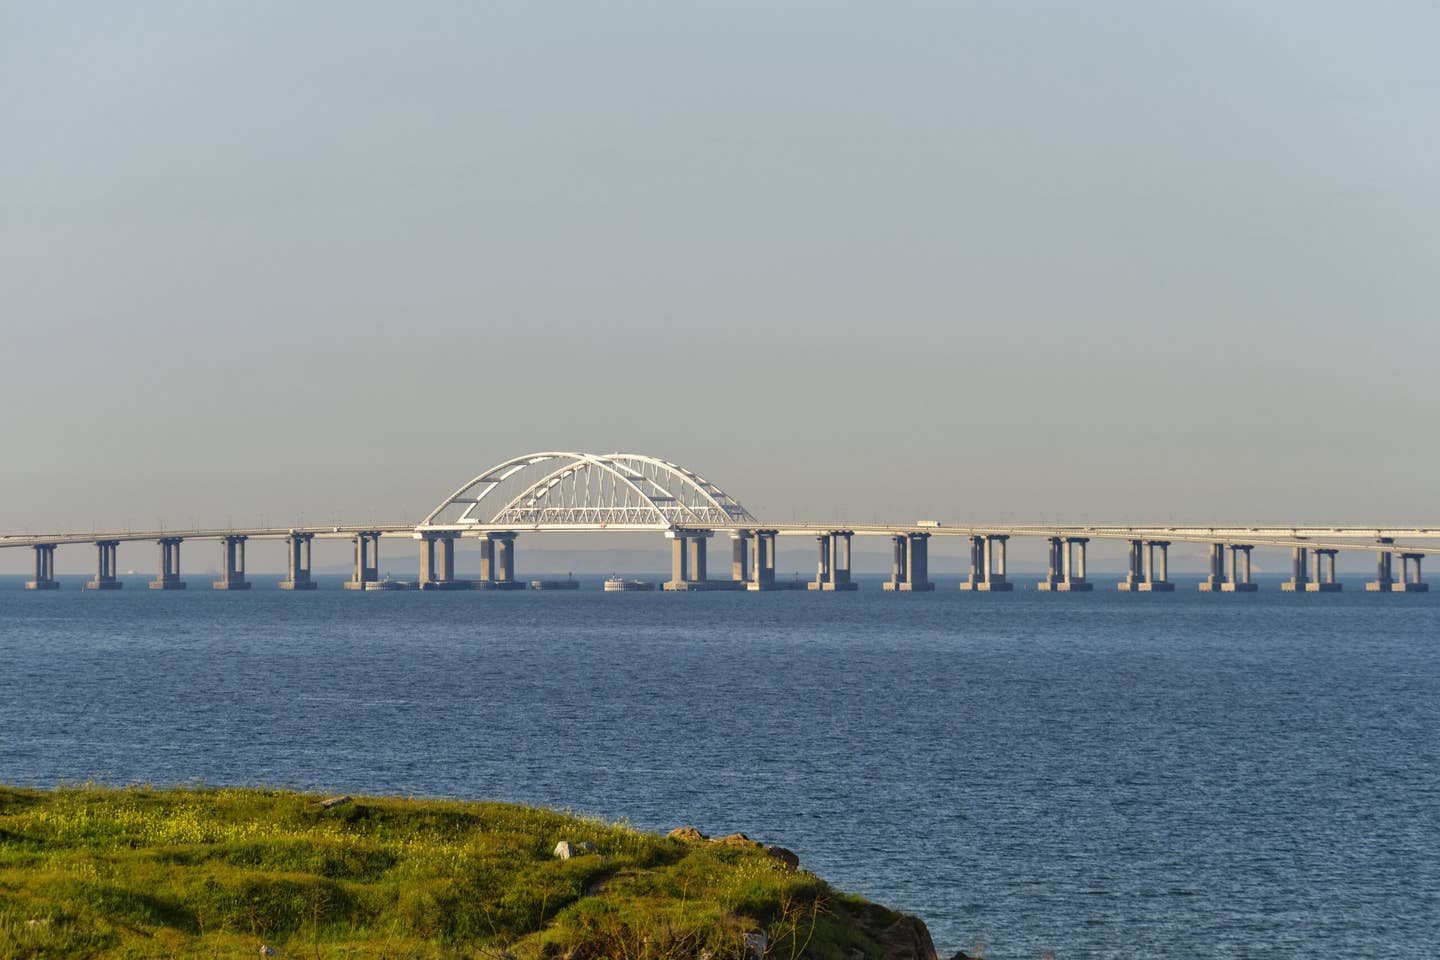 Kerch Strait Bridge. <em>Credit: Alexxx1979/Wikimedia Commons</em>